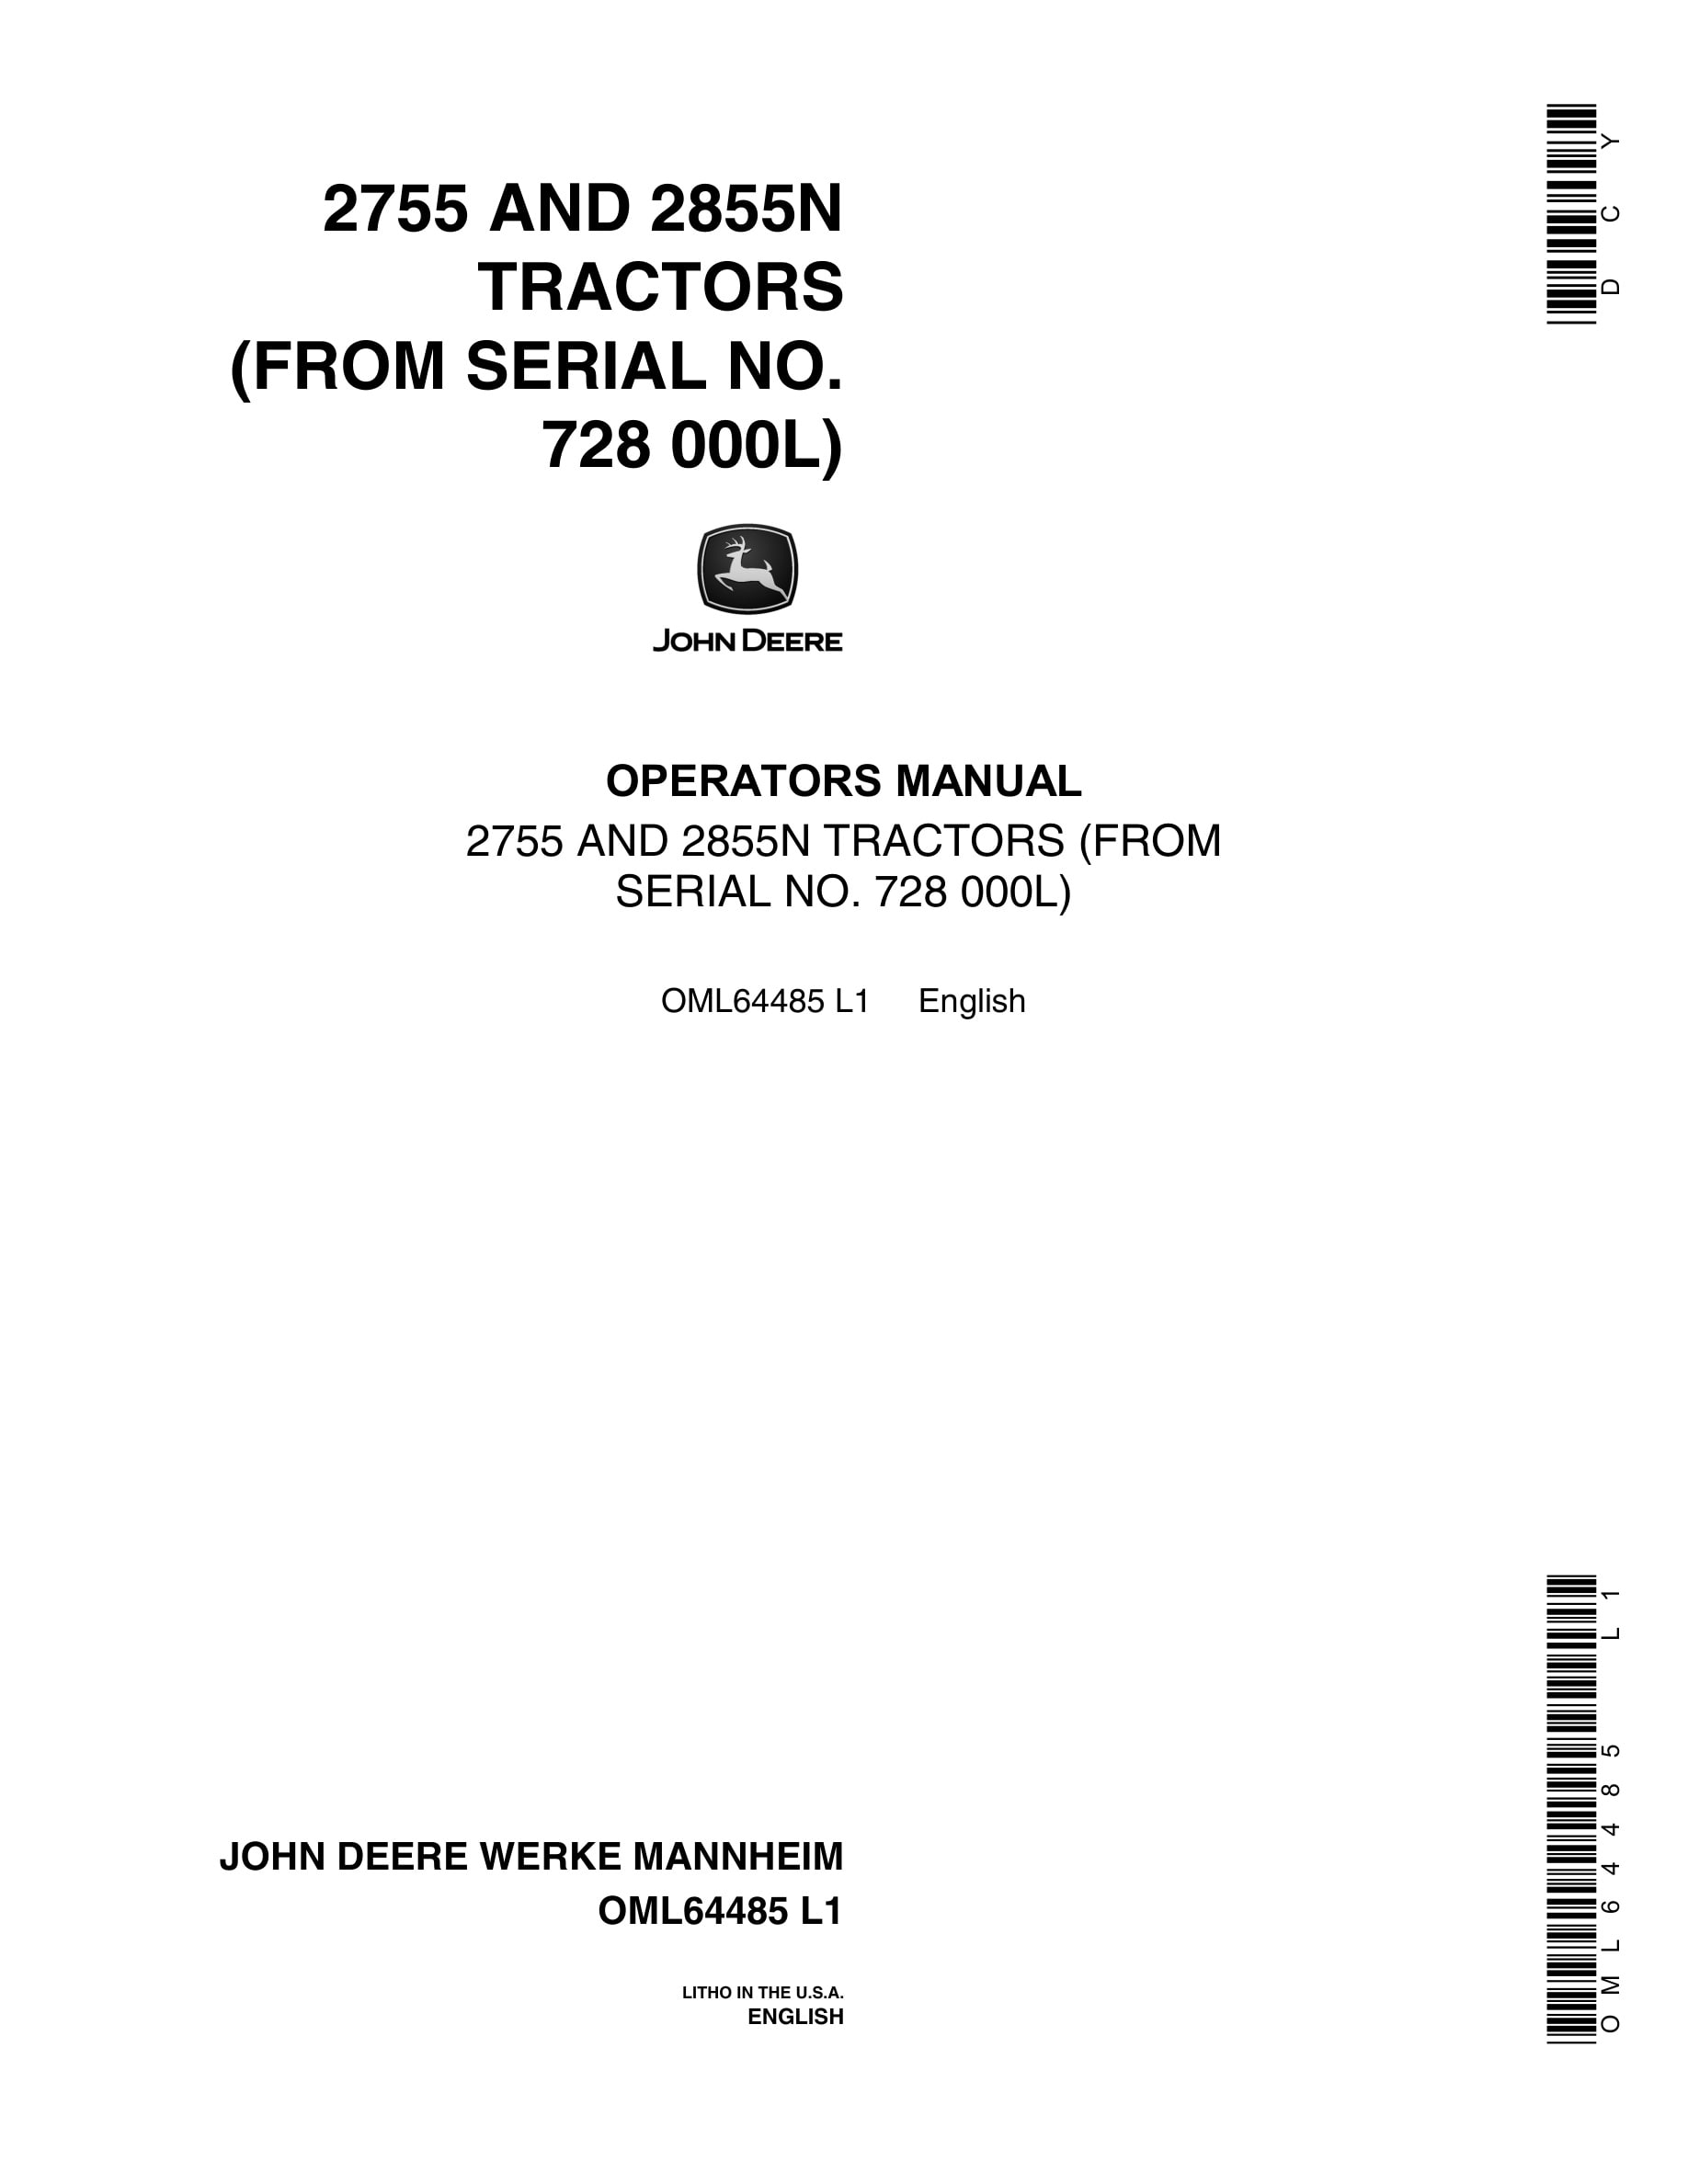 John Deere 2755 AND 2855N Tractor Operator Manual OML64485-1